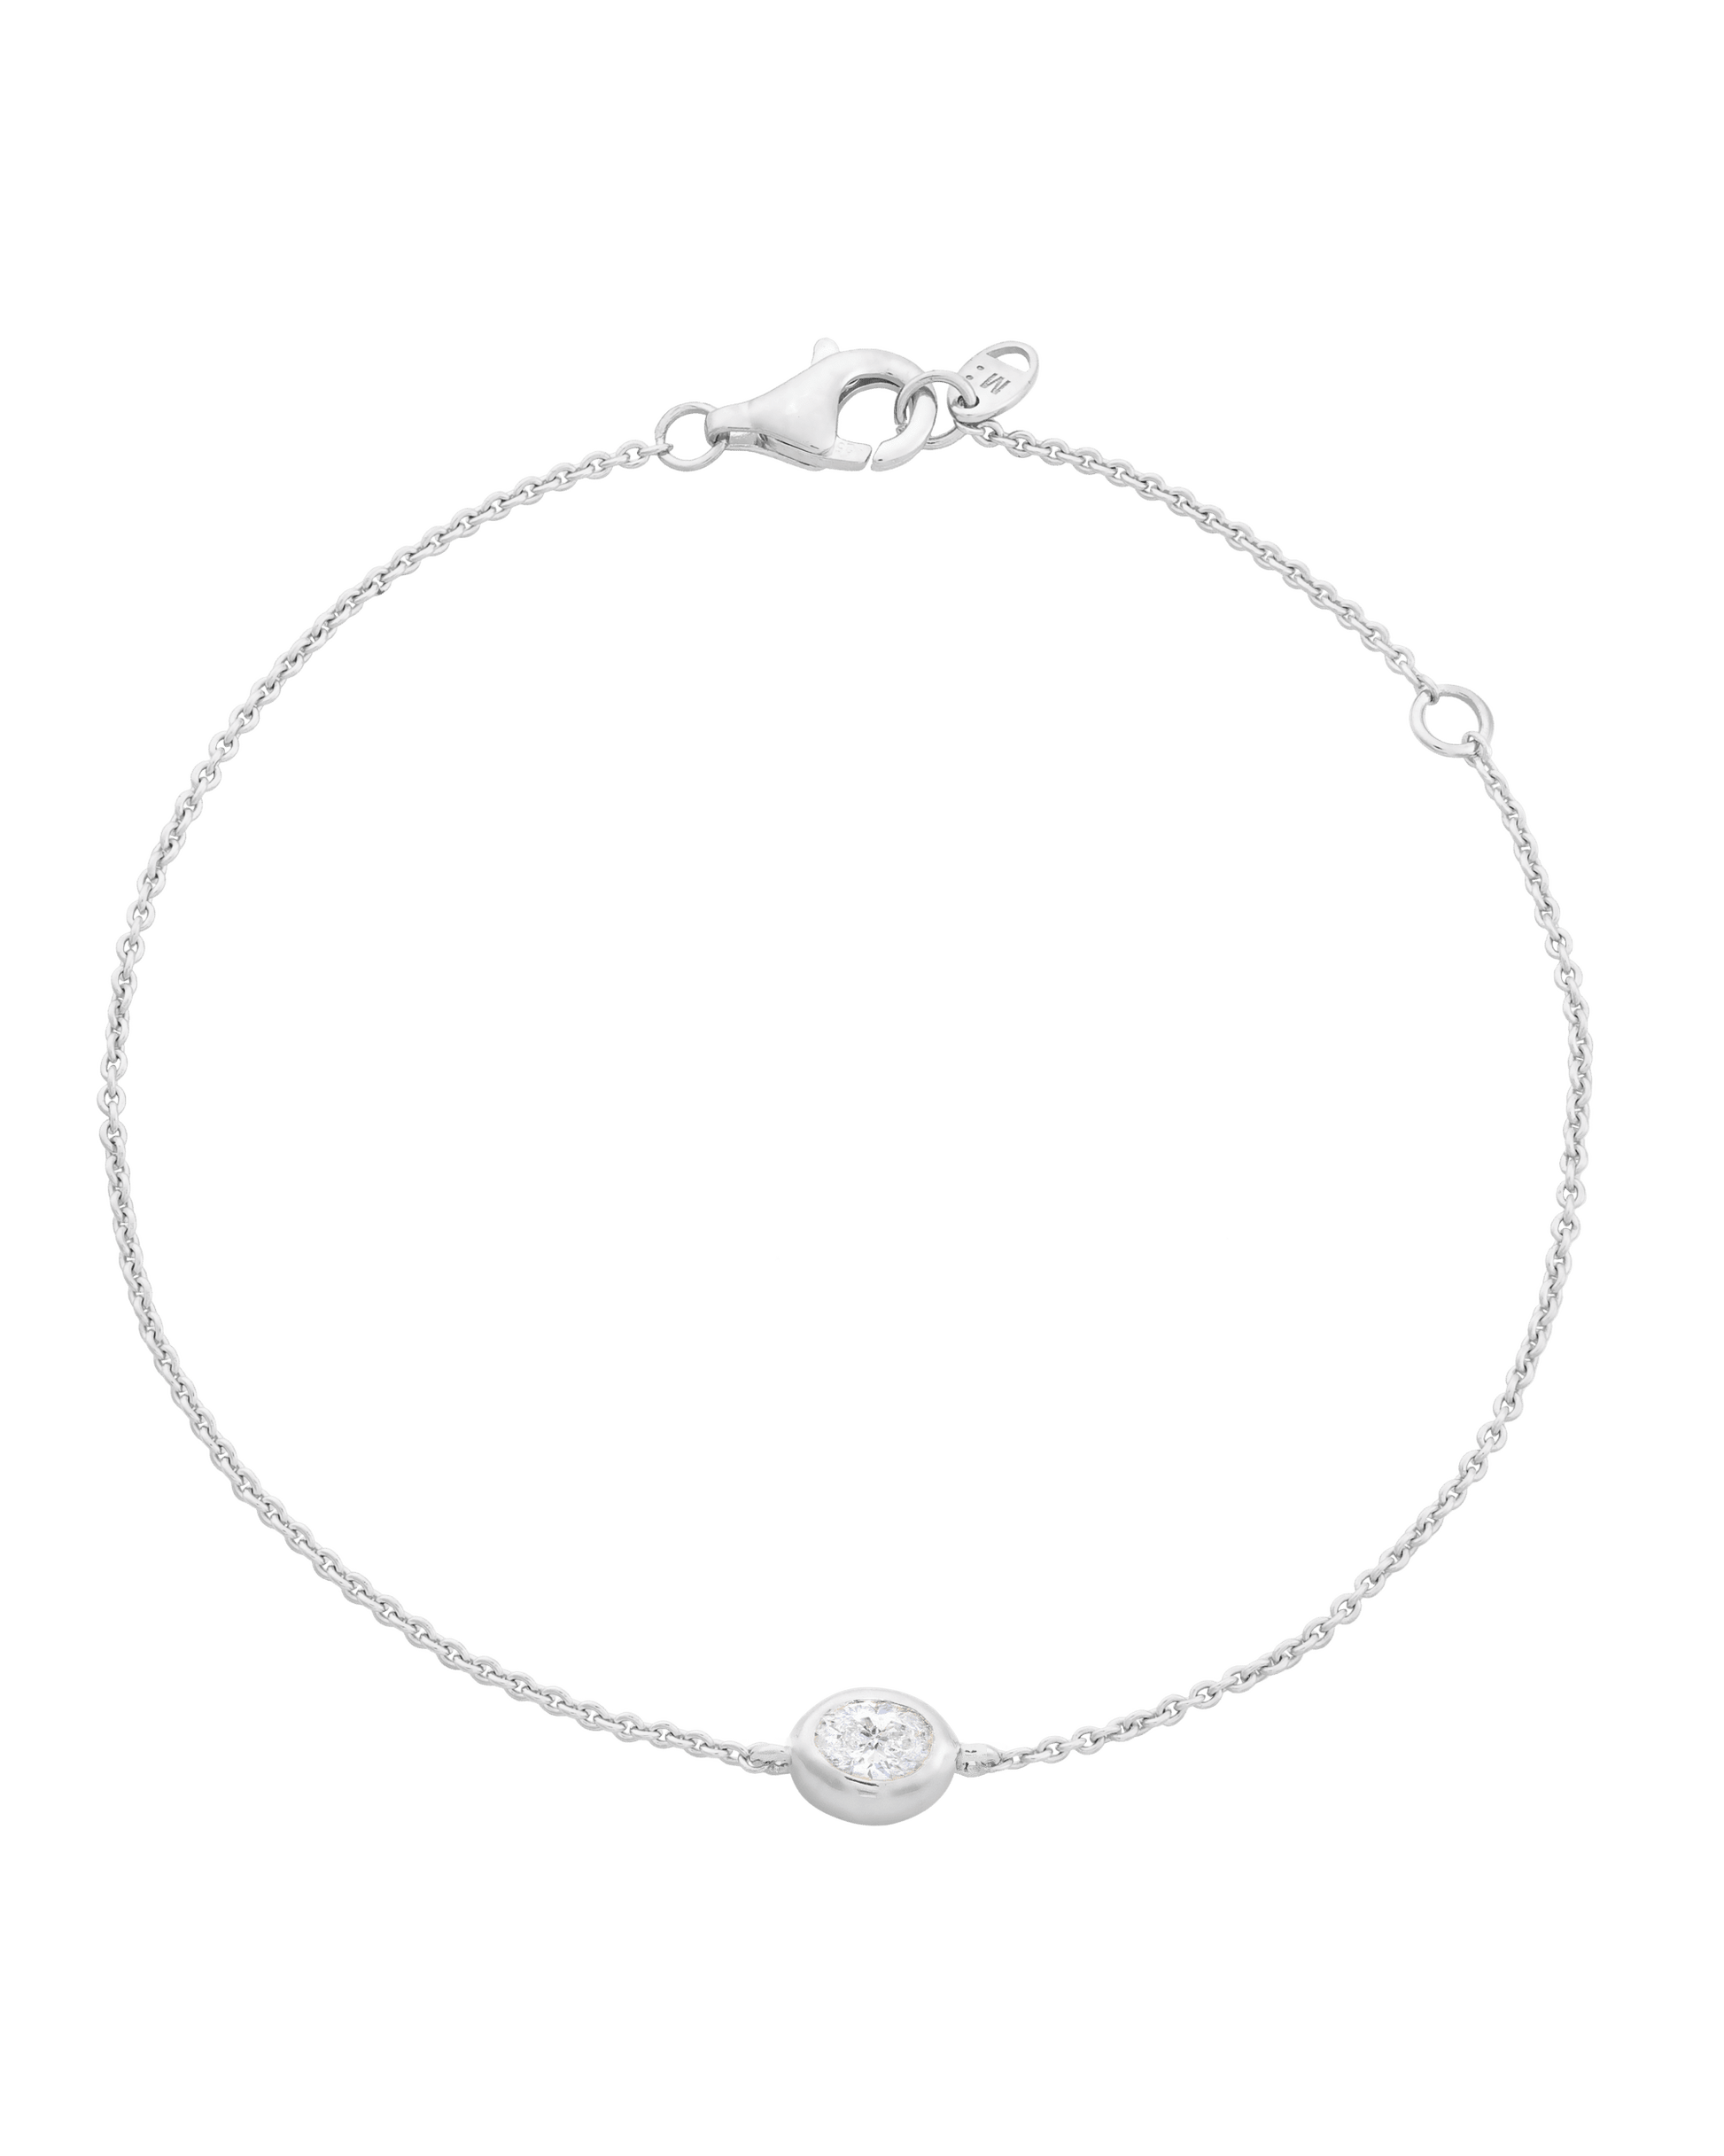 Oval Solitaire Diamond Bracelet - 14K White Gold Bracelets magal-dev 0.10 CT 6"+1“ extender 